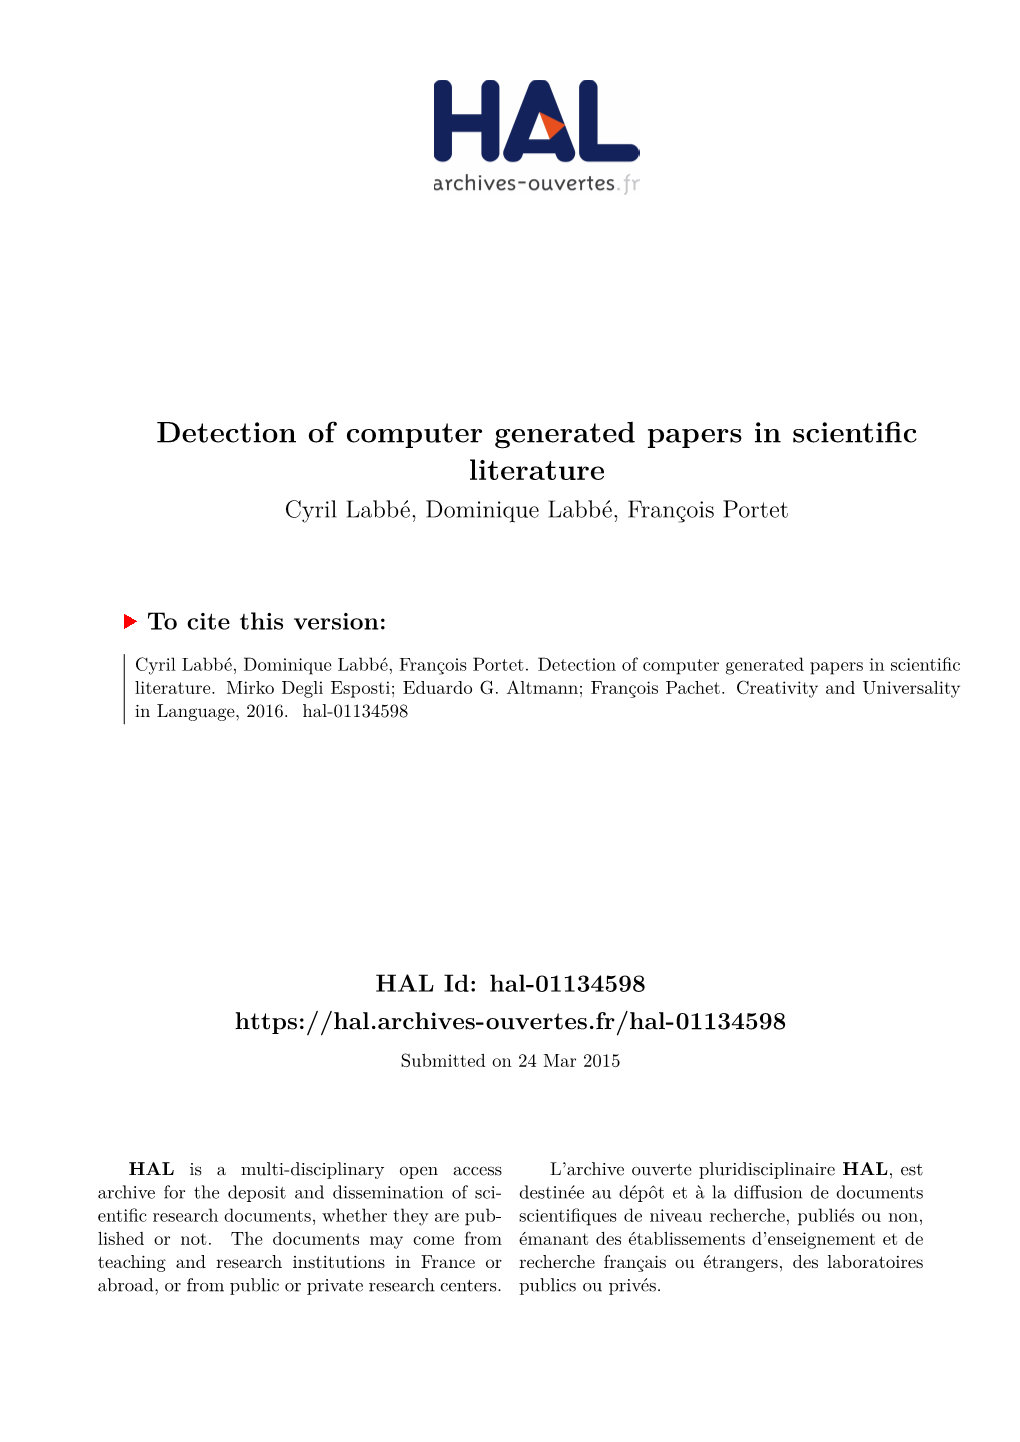 Detection of Computer Generated Papers in Scientific Literature Cyril Labbé, Dominique Labbé, François Portet